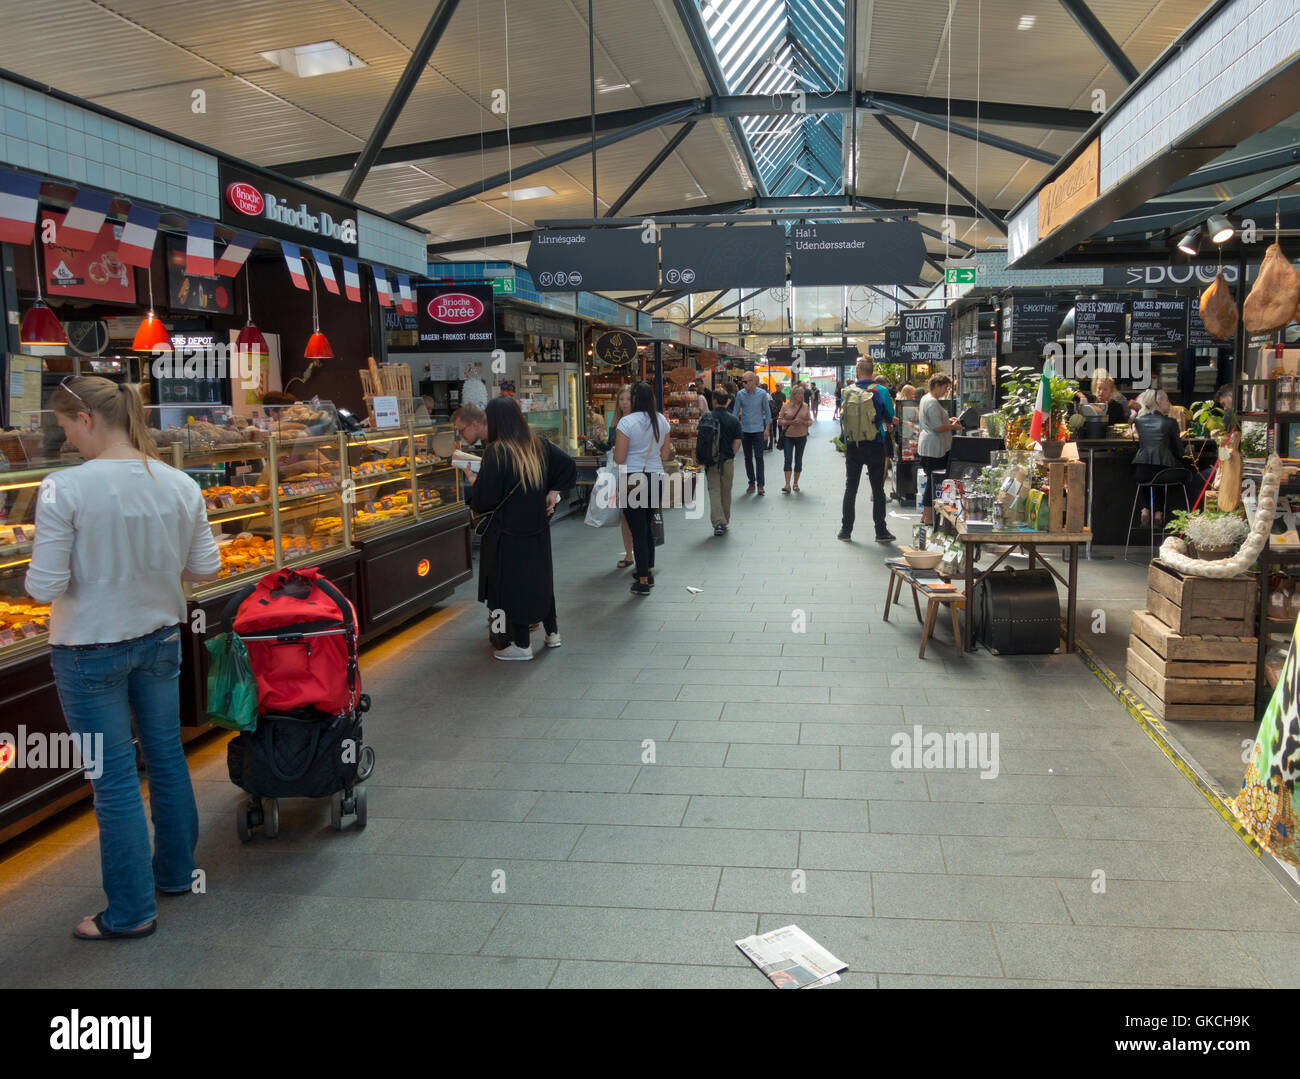 Torvehallerne, Kunden an den zahlreichen Ständen auf dem überdachten Lebensmittelmarkt am Israels Plads, Copenhagen Stockfoto